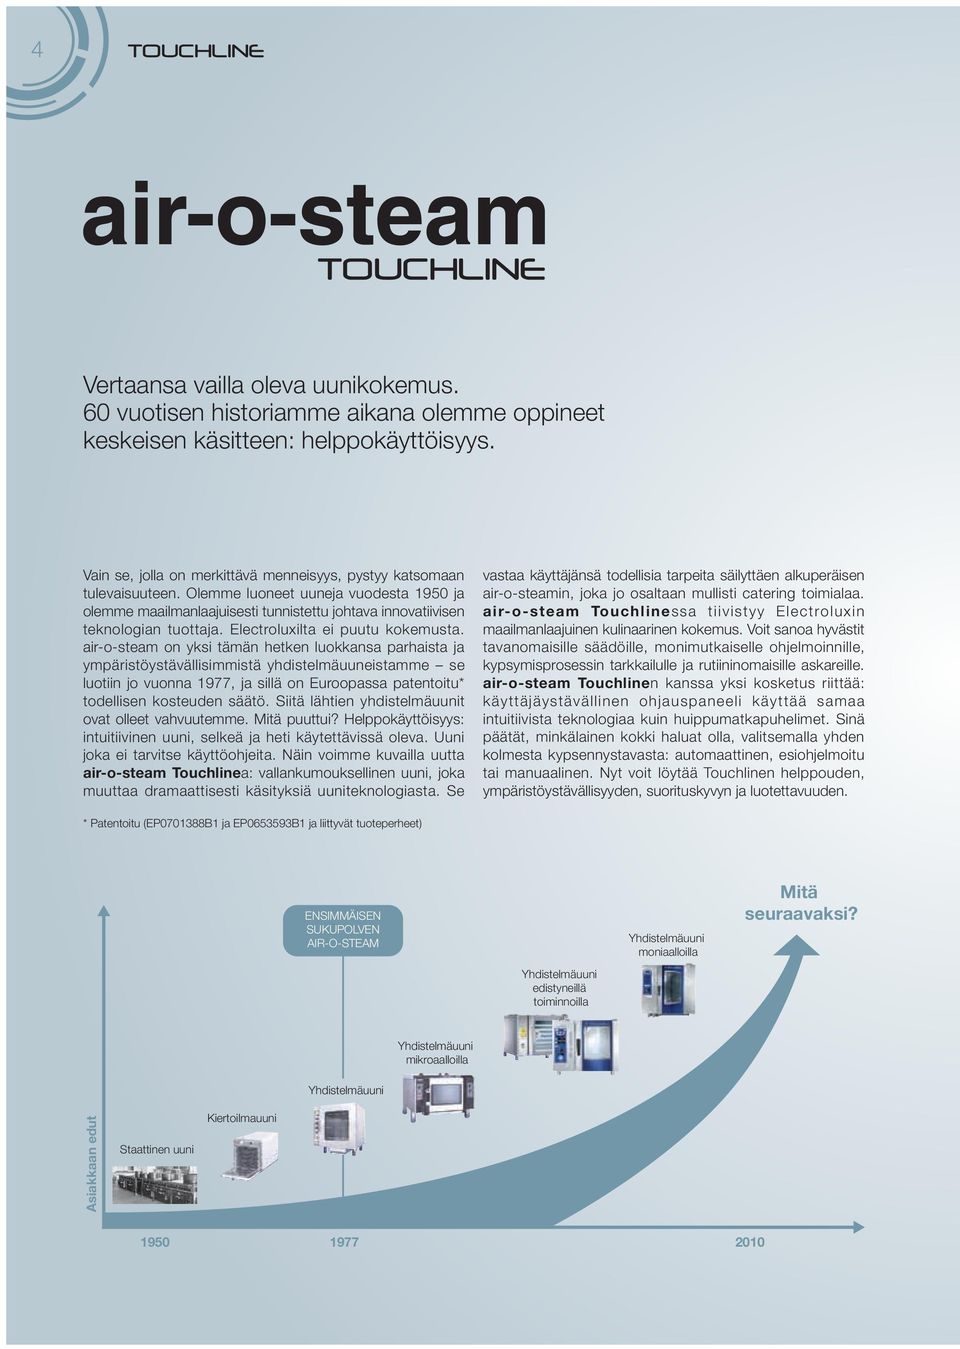 air-o-steam on yksi tämän hetken luokkansa parhaista ja ympäristöystävällisimmistä yhdistelmäuuneistamme se luotiin jo vuonna 1977, ja sillä on Euroopassa patentoitu* todellisen kosteuden säätö.